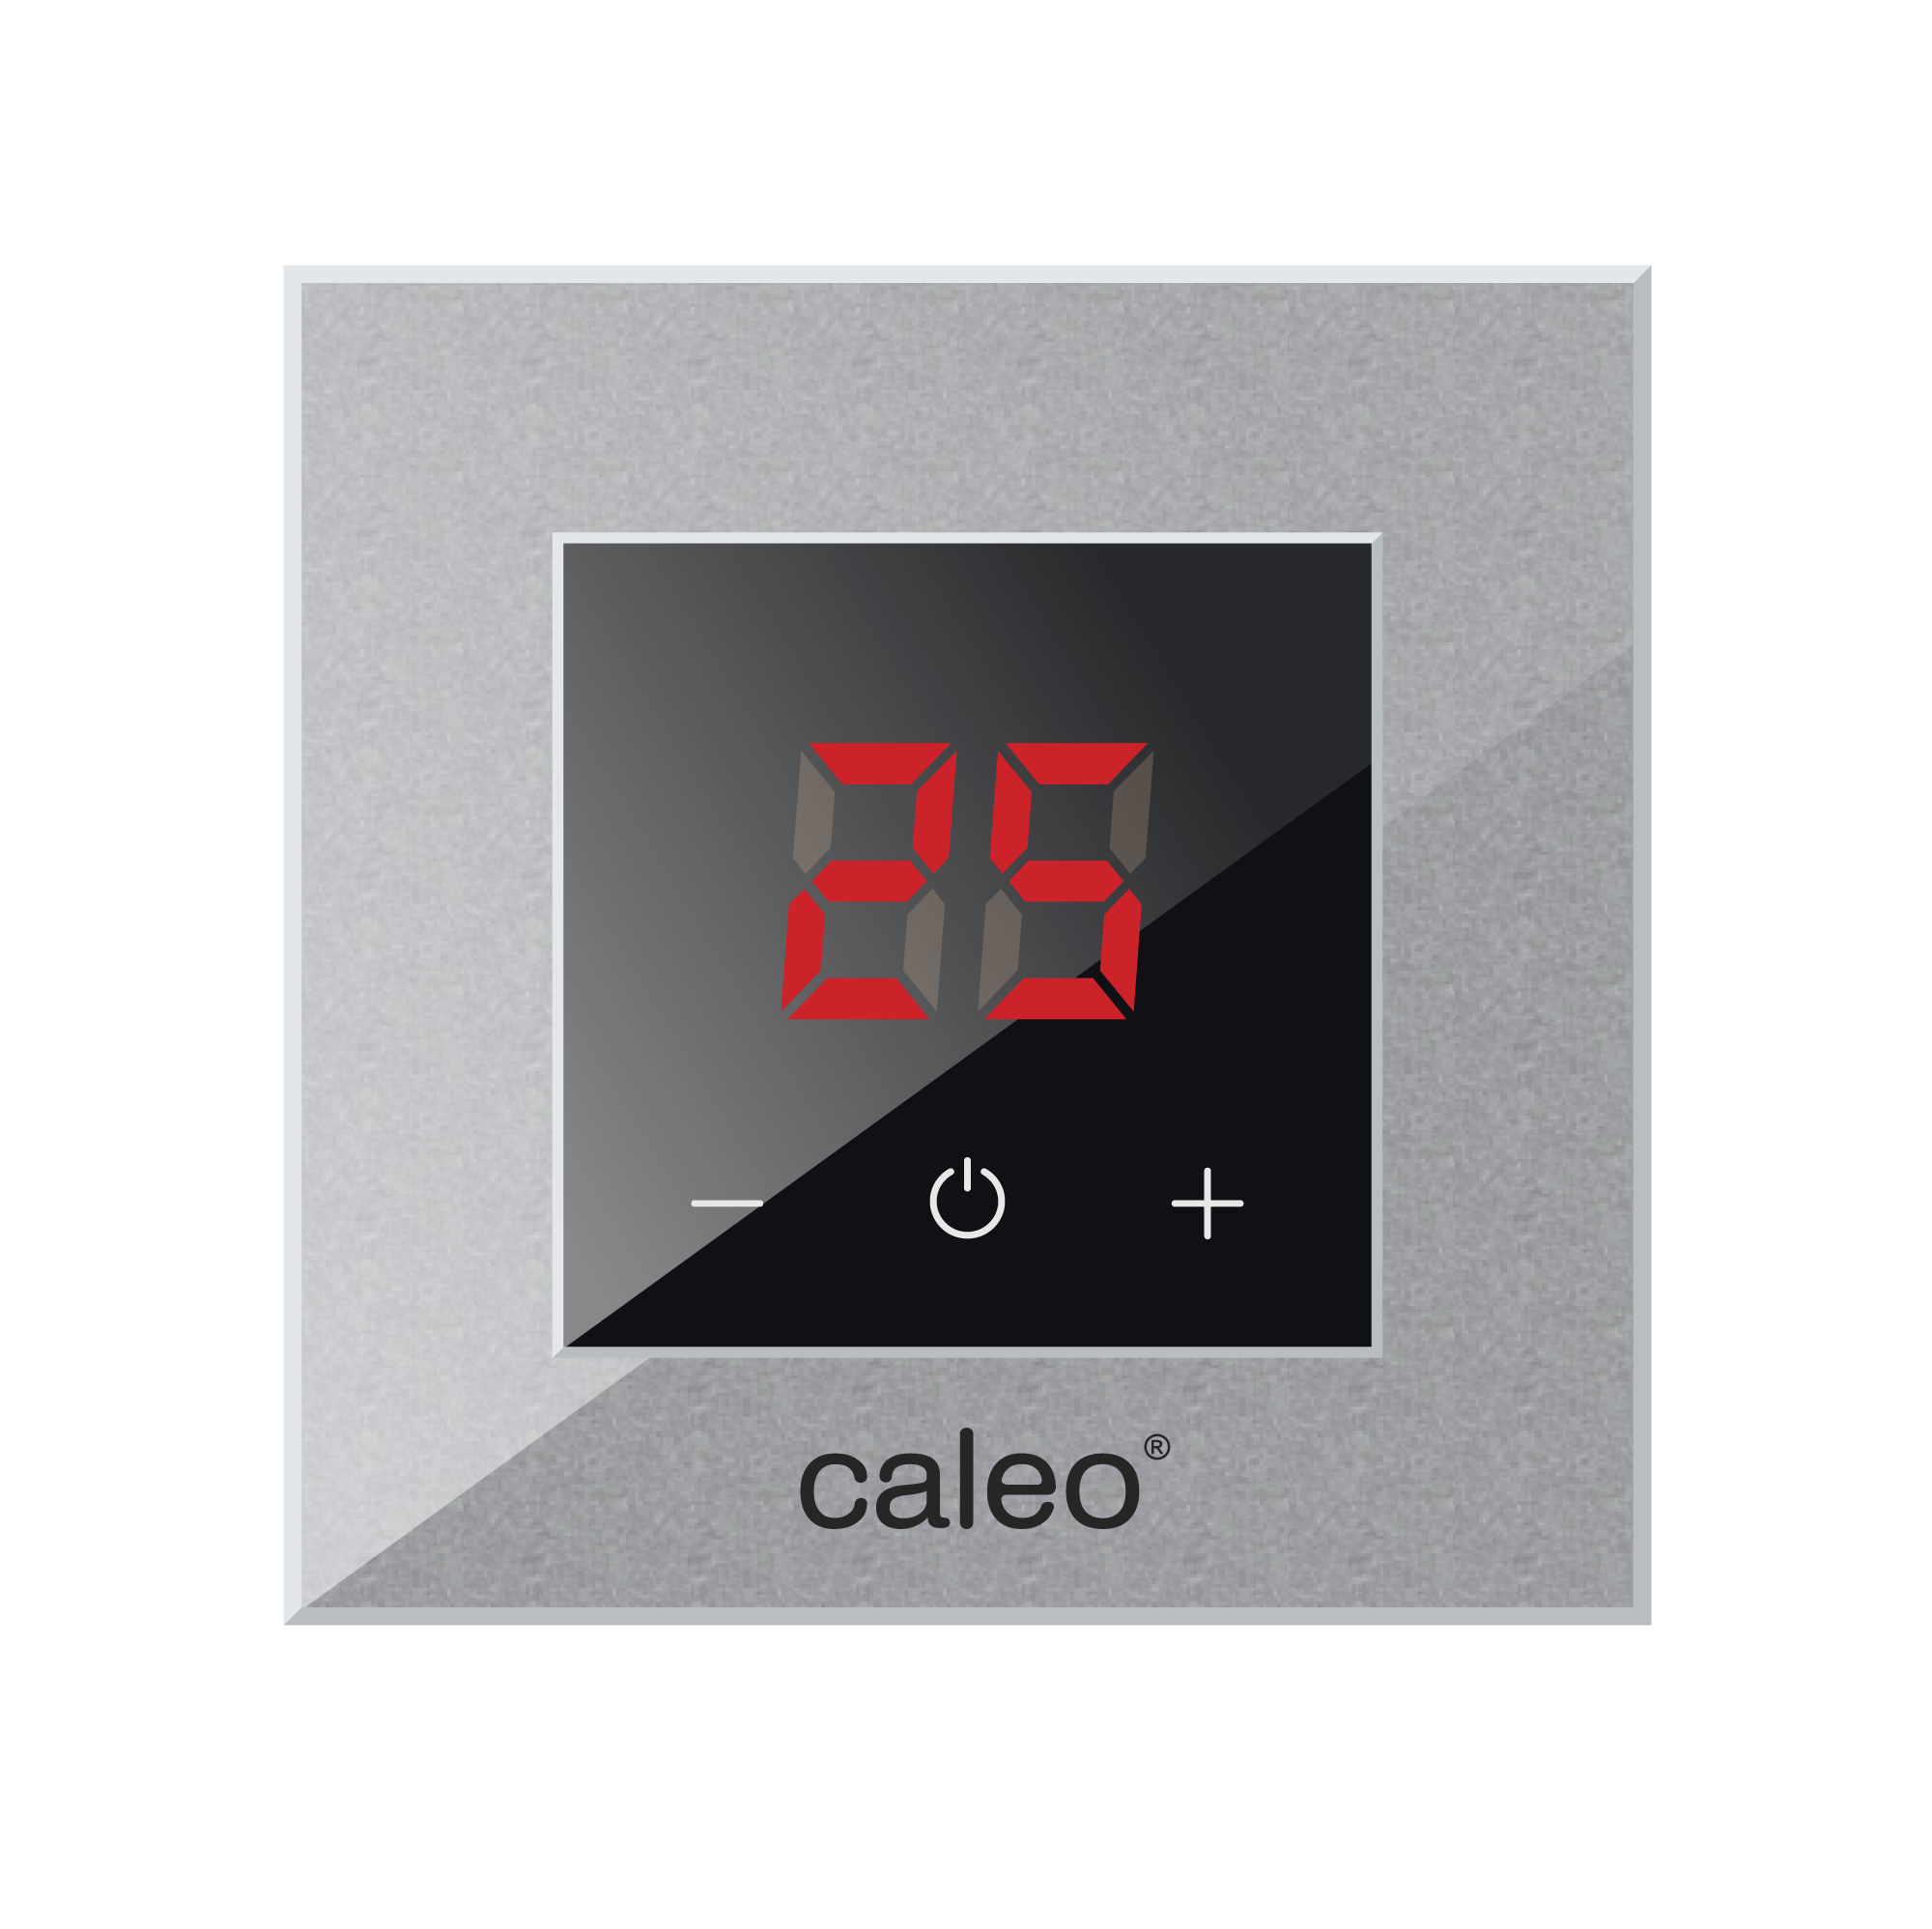 фото Терморегулятор caleo nova встраиваемый цифровой, 3,5 квт, алюминиевый